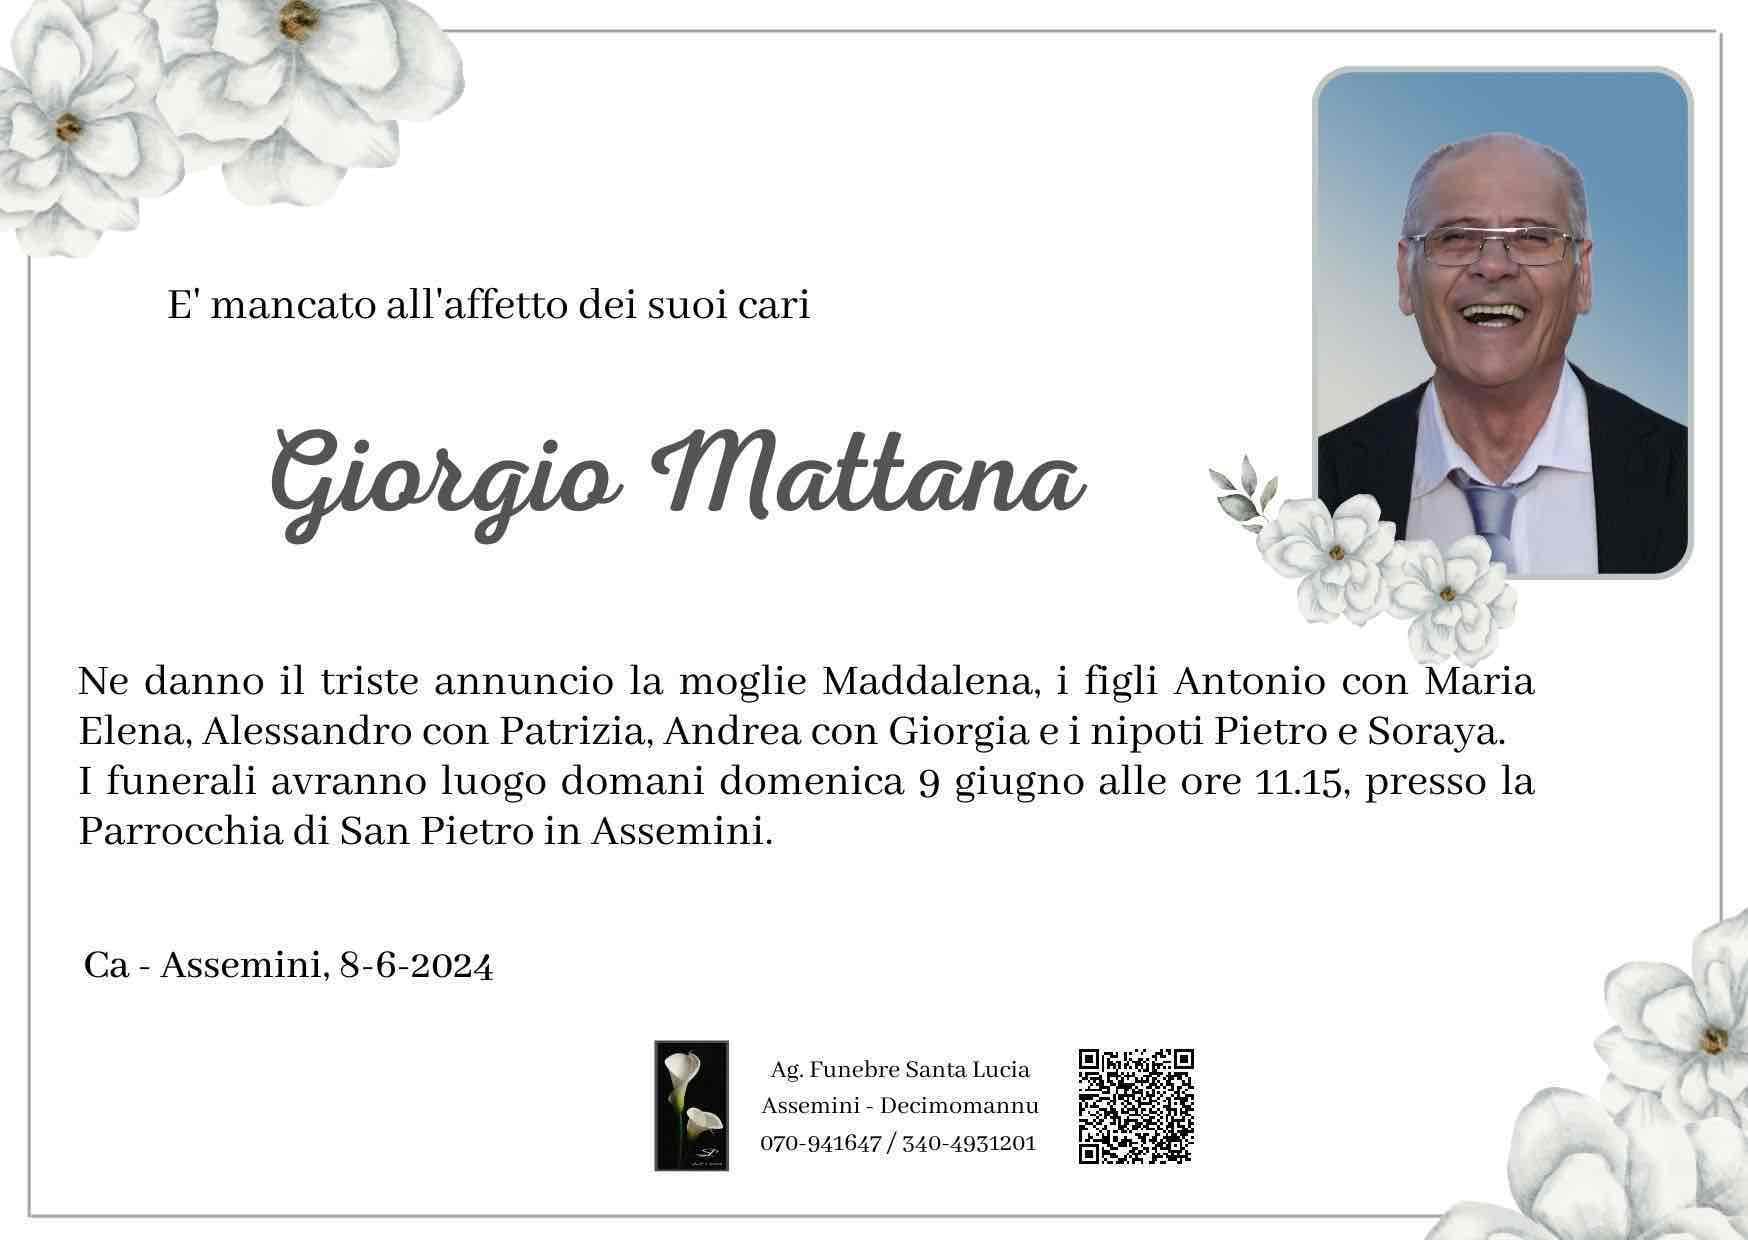 Giorgio Mattana